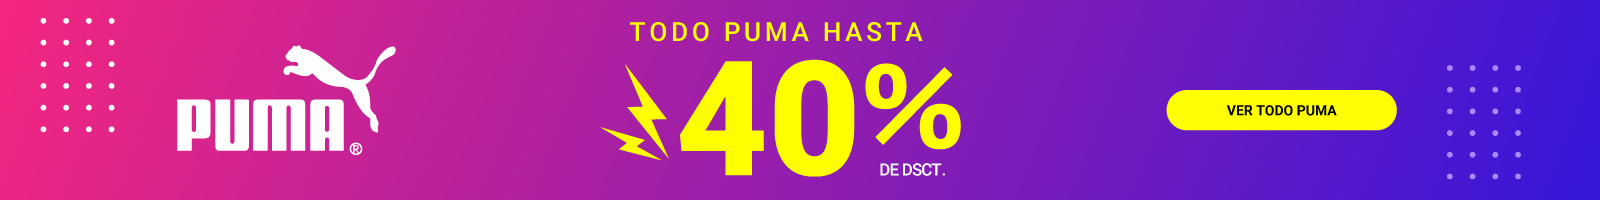 Todo Puma hasta con 40% de descuento